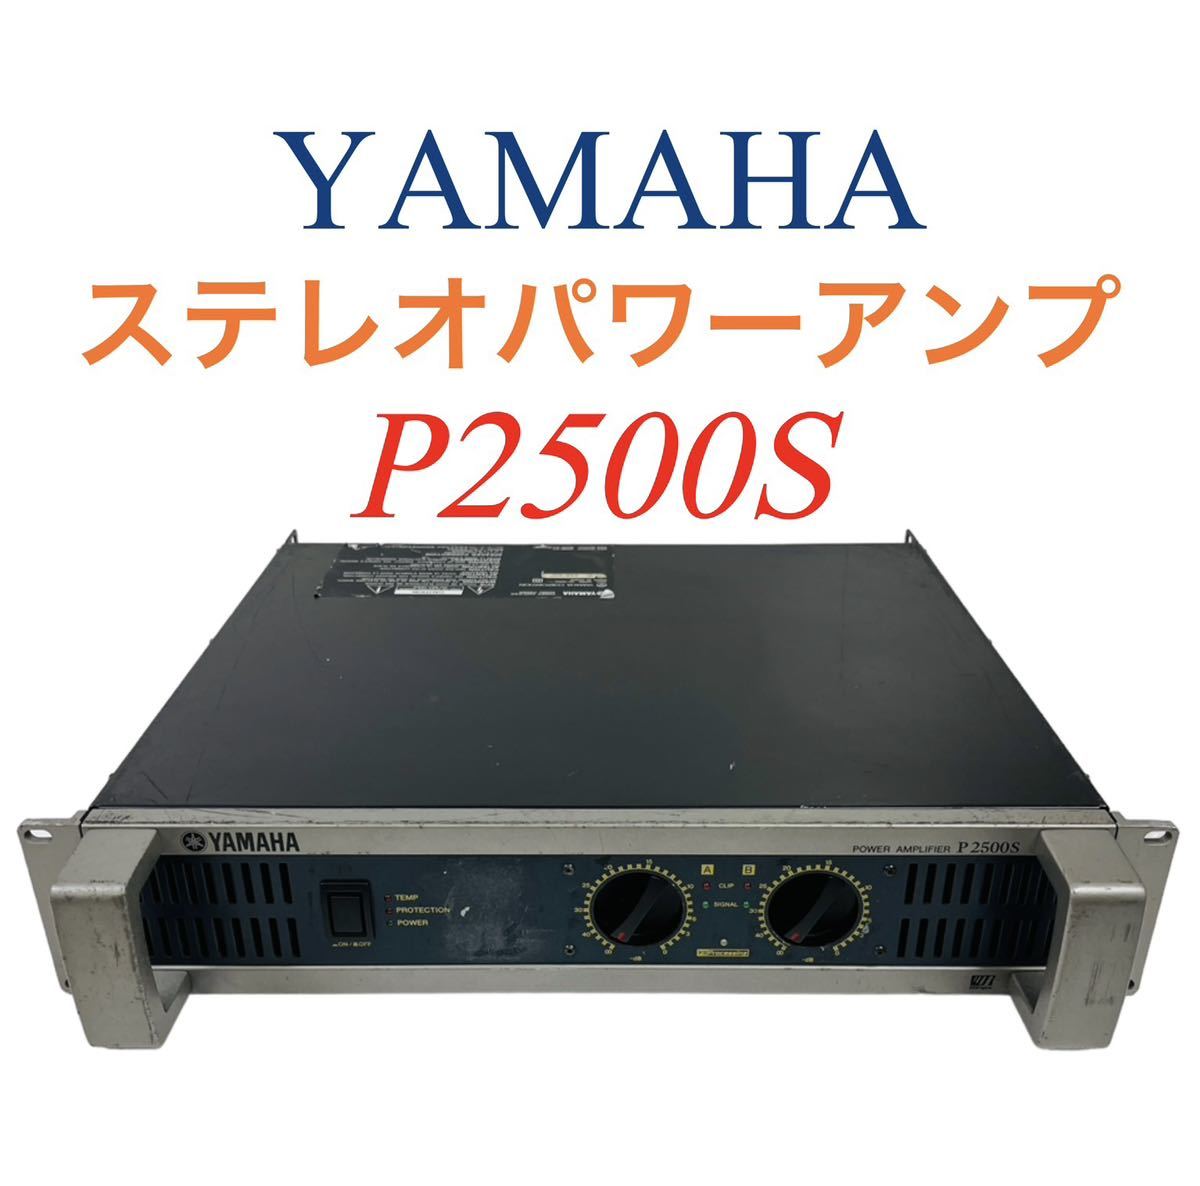 YAMAHA ヤマハ ステレオパワーアンプ P2500S-